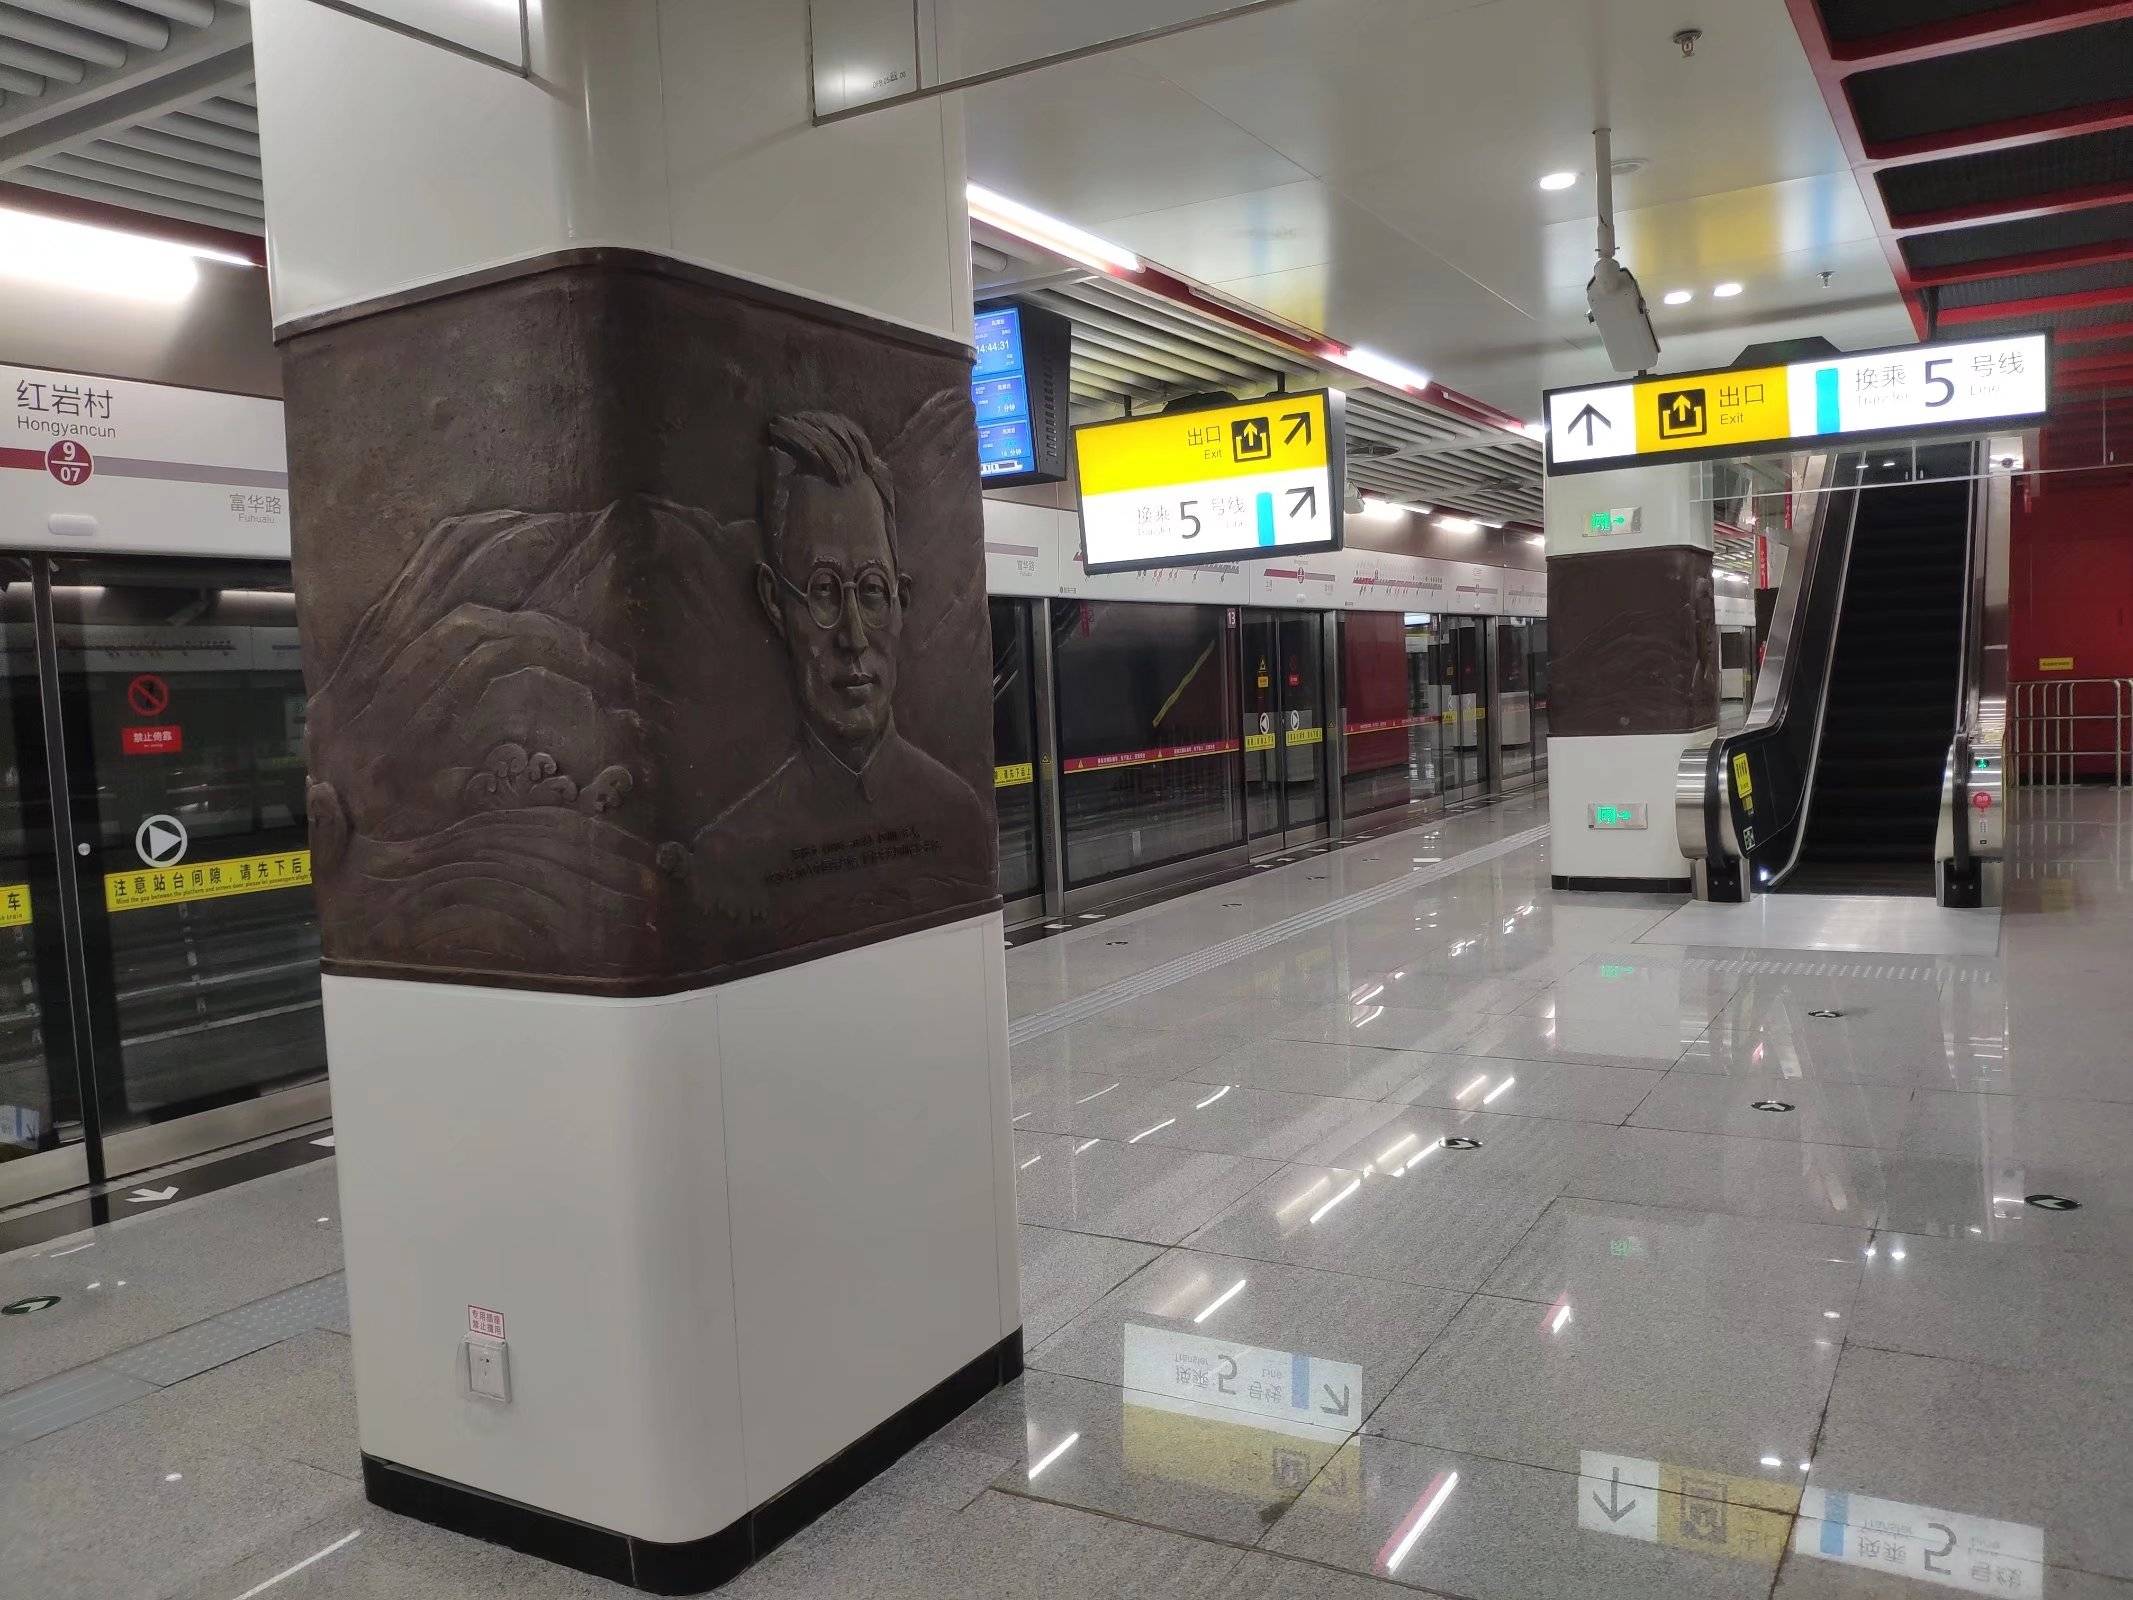 重庆红岩村地铁站墙面、立柱浮雕展现红岩文化精神